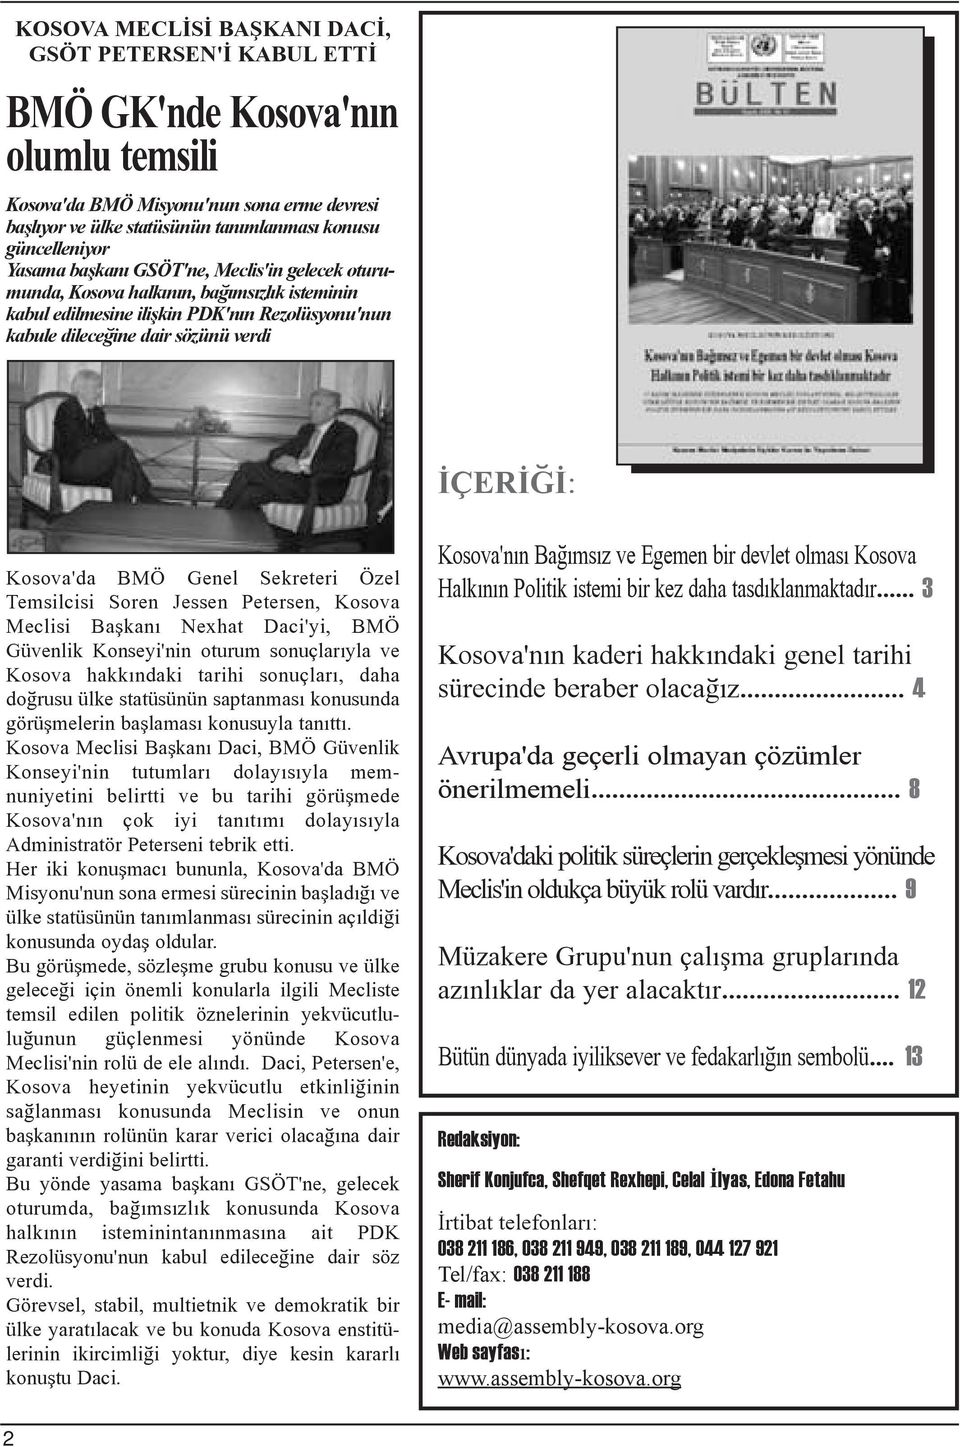 BMÖ Genel Sekreteri Özel Temsilcisi Soren Jessen Petersen, Kosova Meclisi Baþkaný Nexhat Daci'yi, BMÖ Güvenlik Konseyi'nin oturum sonuçlarýyla ve Kosova hakkýndaki tarihi sonuçlarý, daha doðrusu ülke